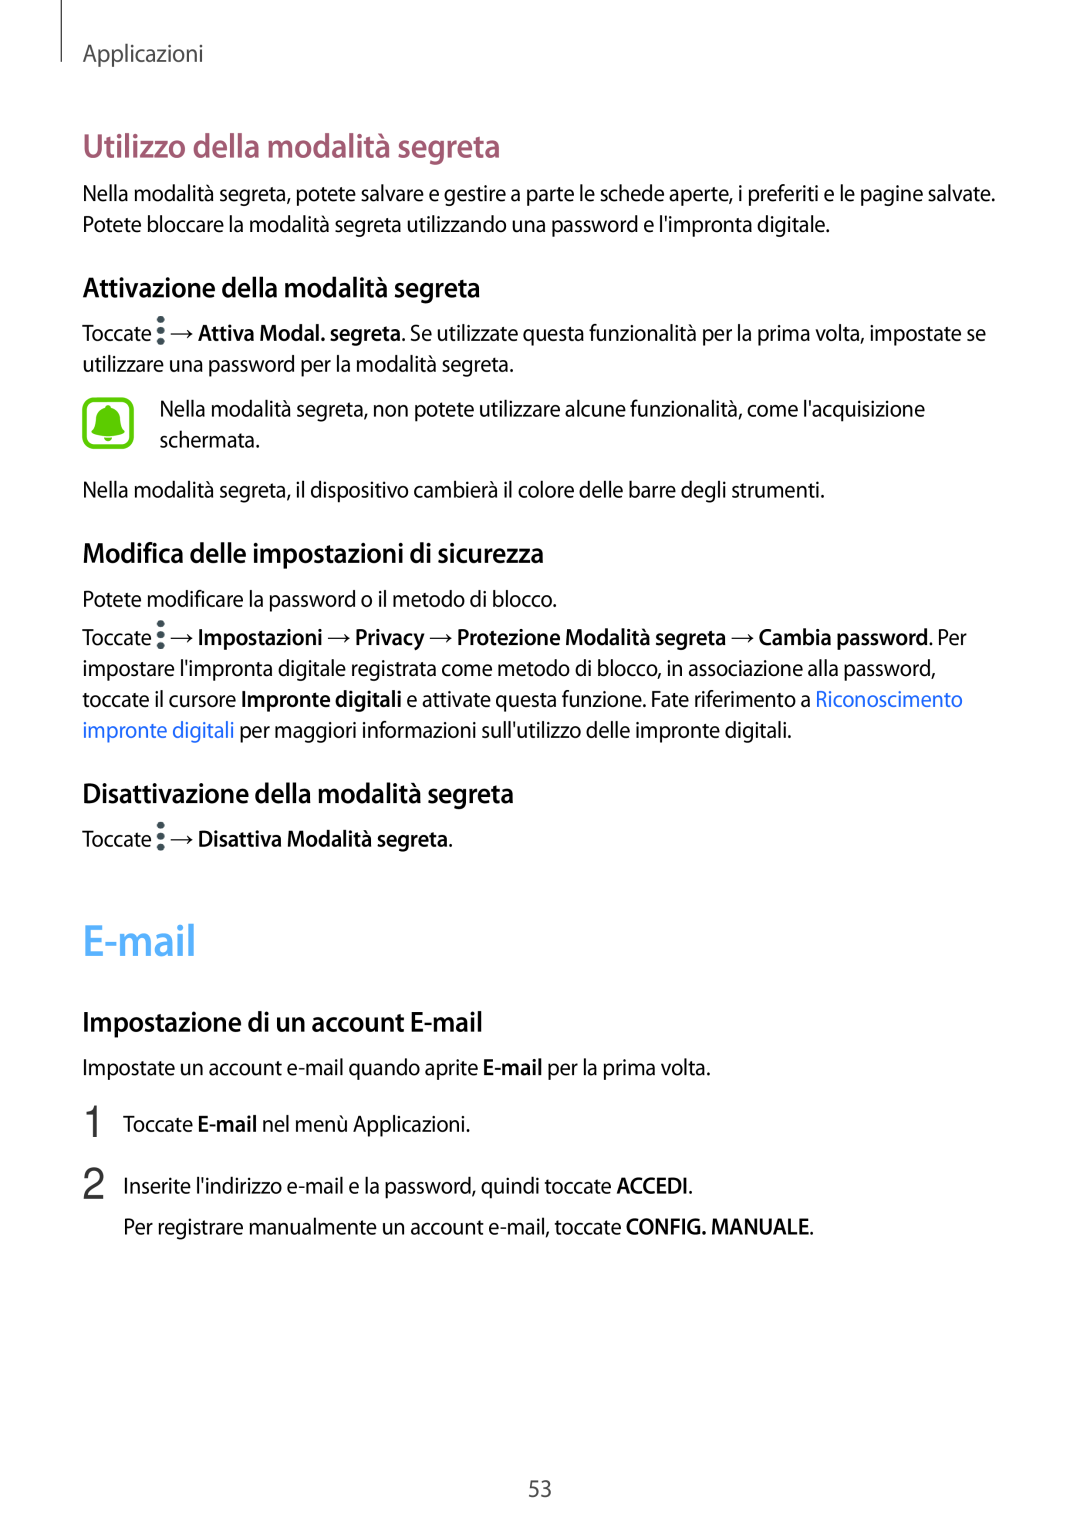 Samsung SM-T810NZDEPHN manual E-mail, Utilizzo della modalità segreta, Attivazione della modalità segreta, Applicazioni 